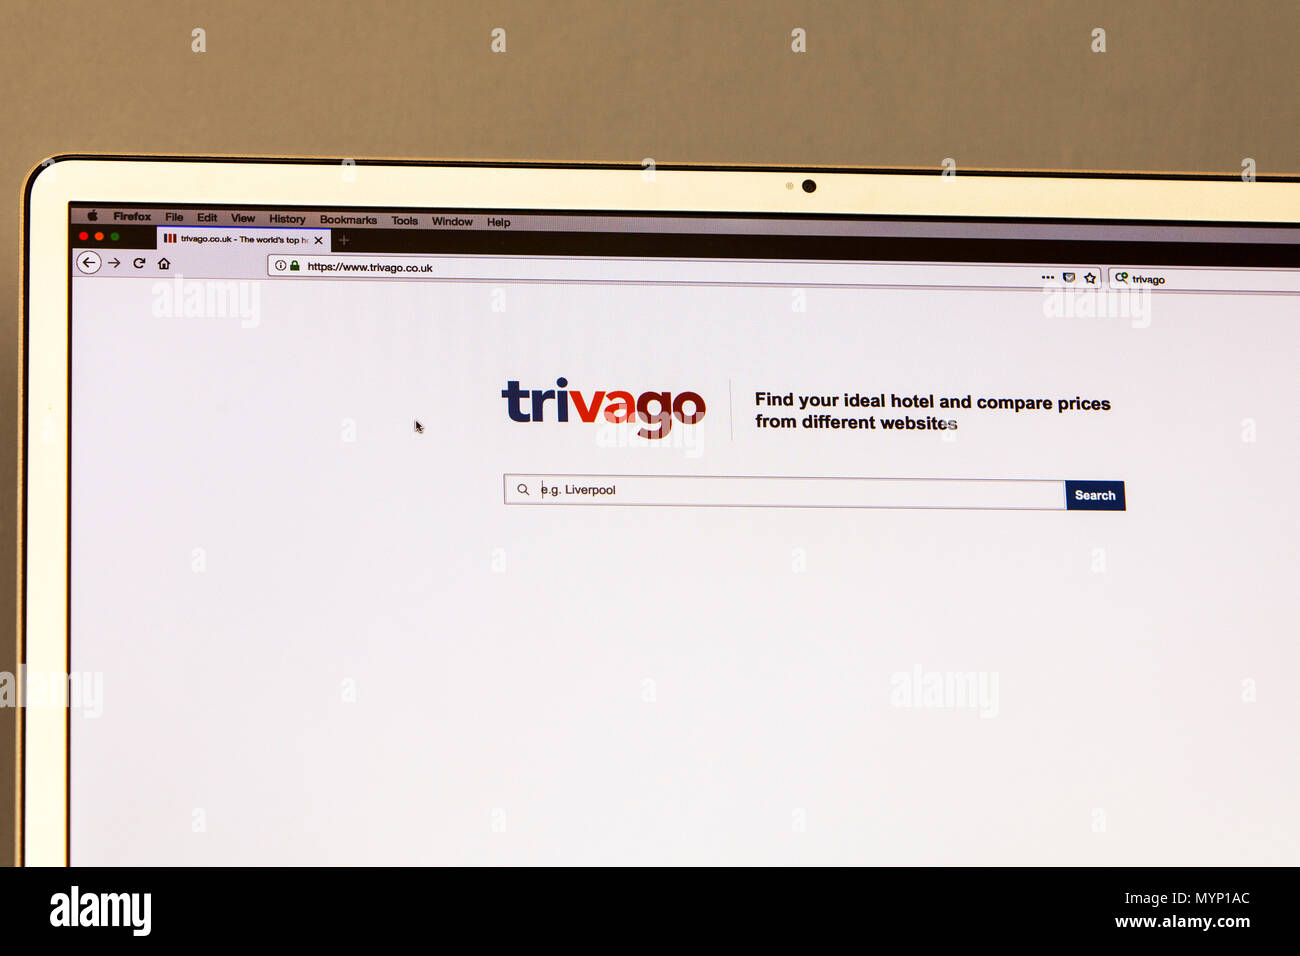 Trivago, Trivago home page, Trivago hotel price comparison site, hotel price comparison site, trivago price comparison, trivago website, trivago home Stock Photo